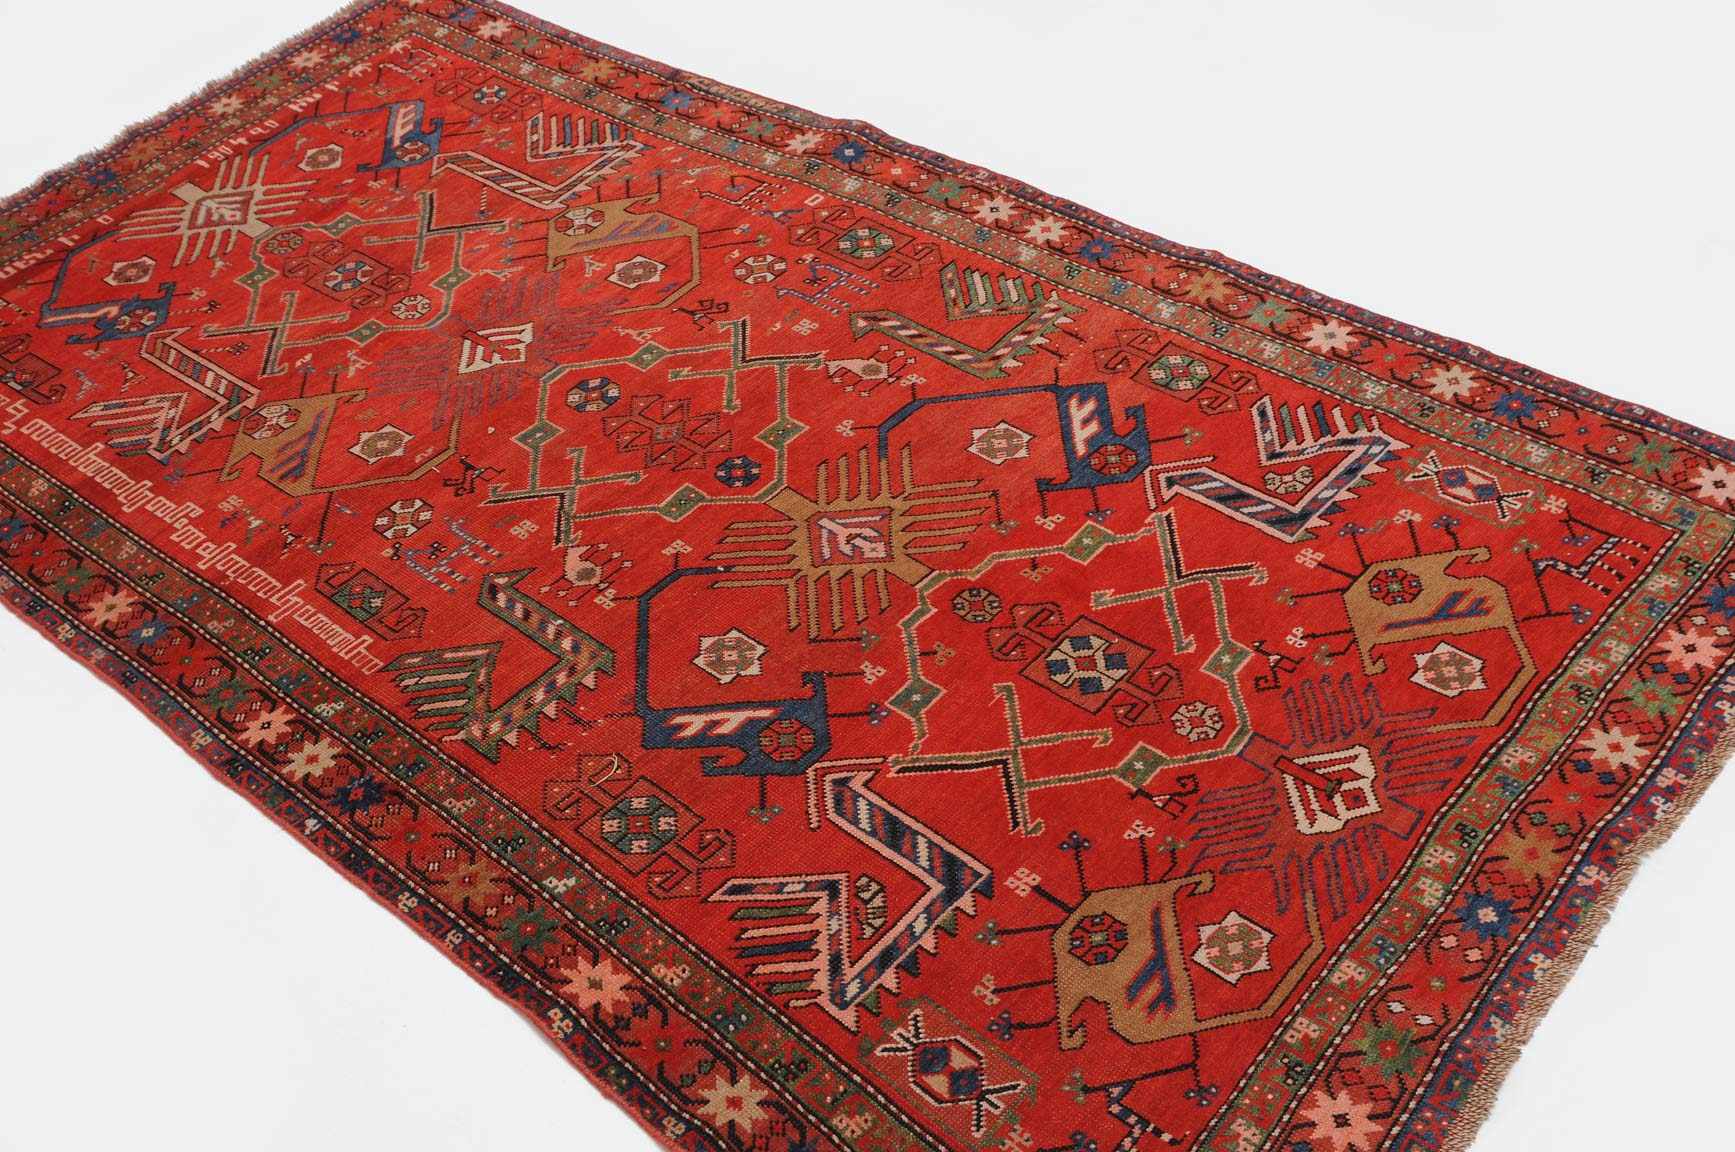 Karabagh S-Kaukasus, datiert mit "1904". Das rote Mittelfeld ist mit stilisierten Akstafa-Vögeln